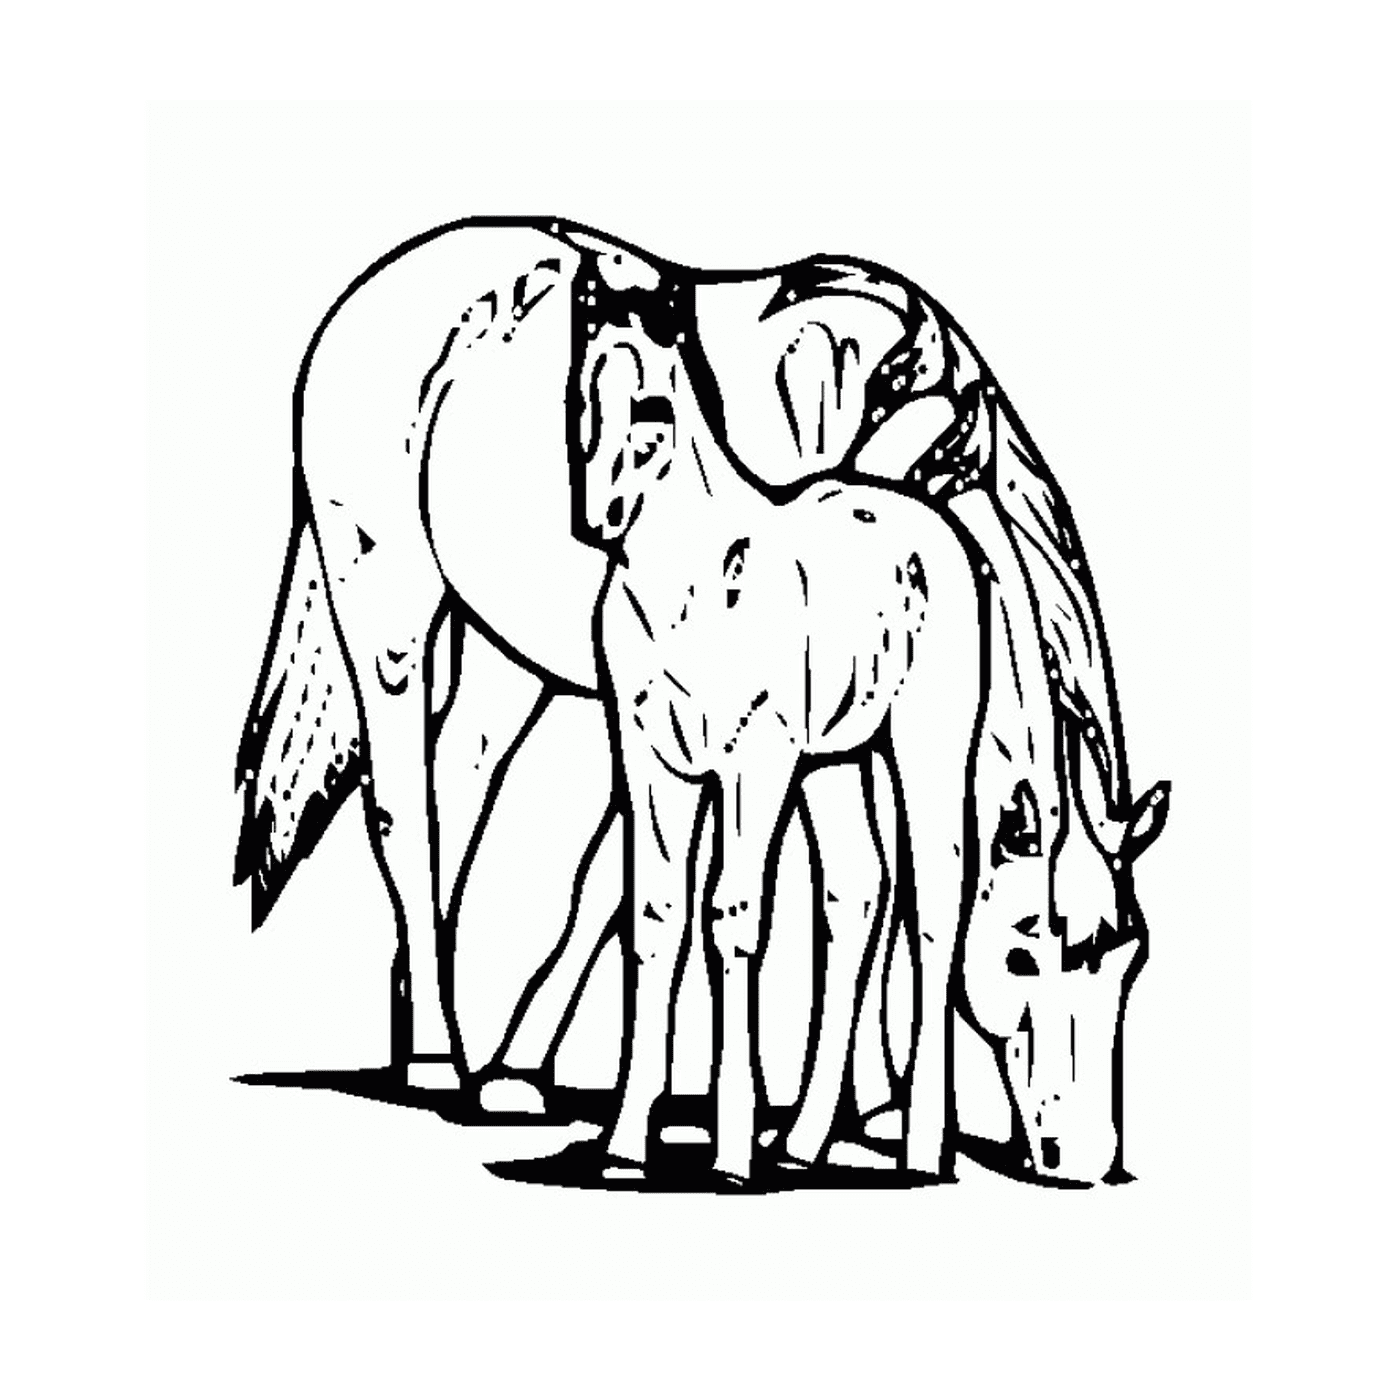  Cavallo e il suo puledro - Un cavallo e un puledro 